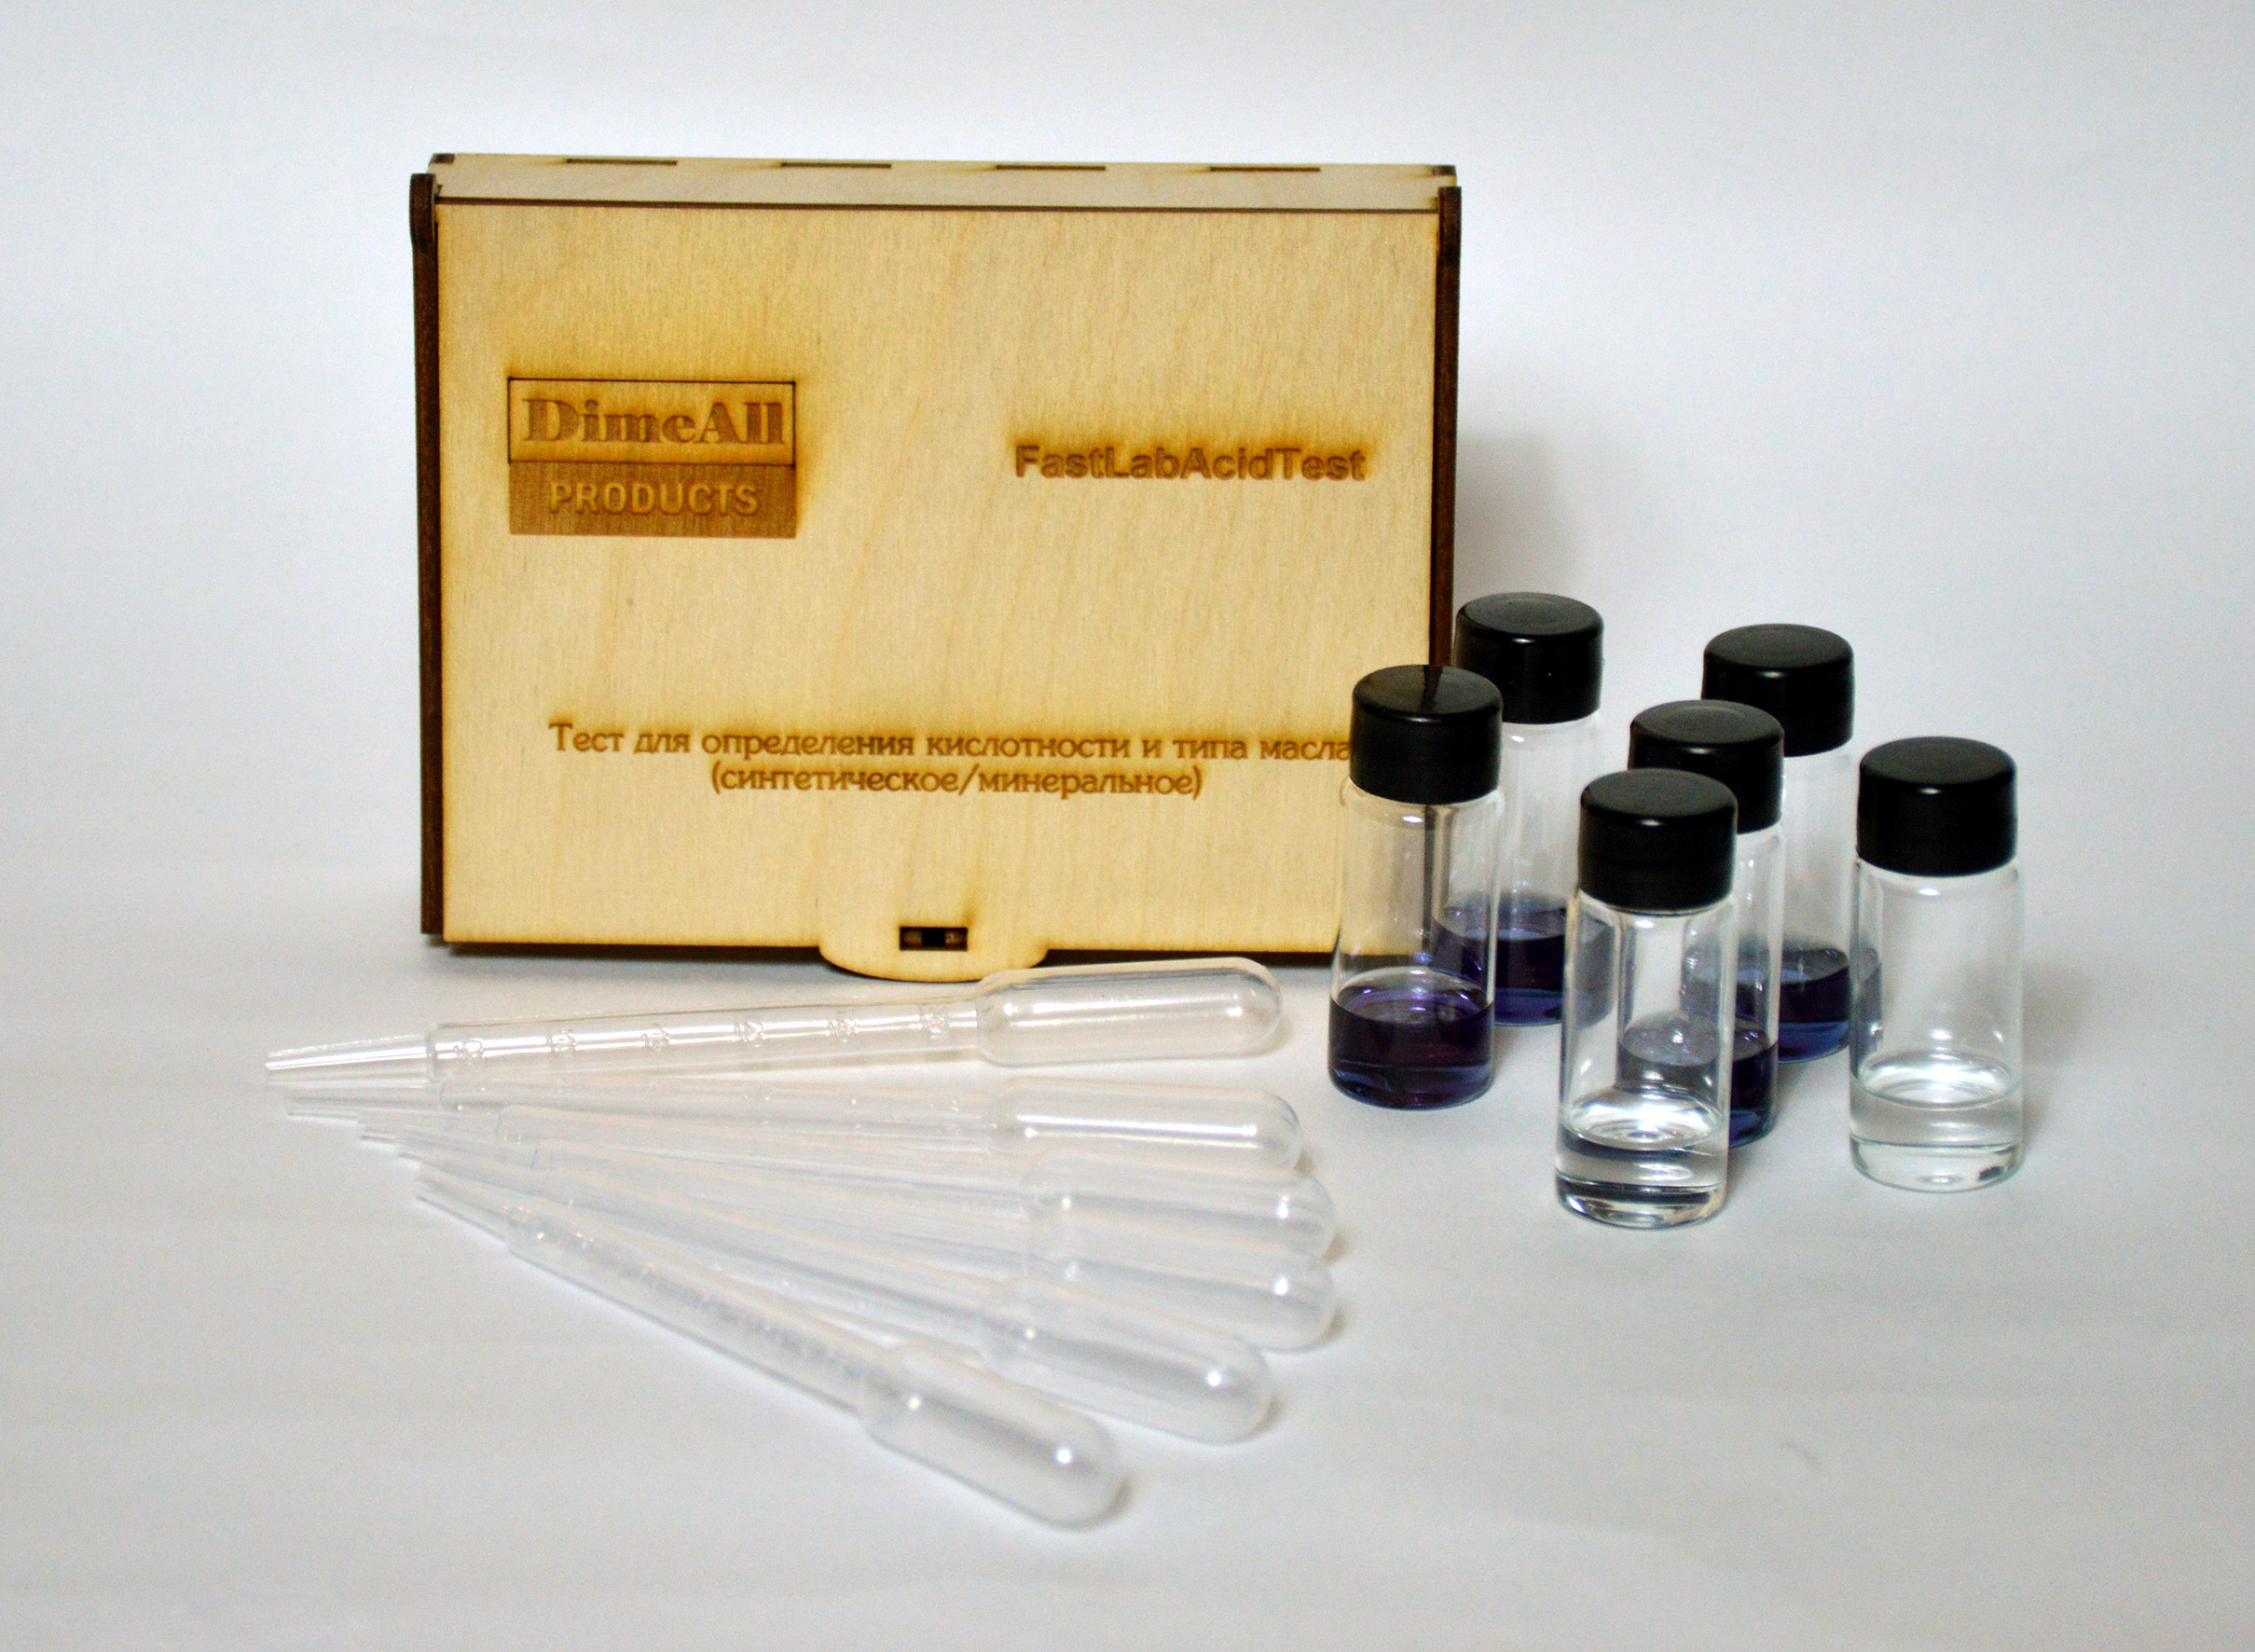 Тест на кислотность и на масло FlastLabAcid